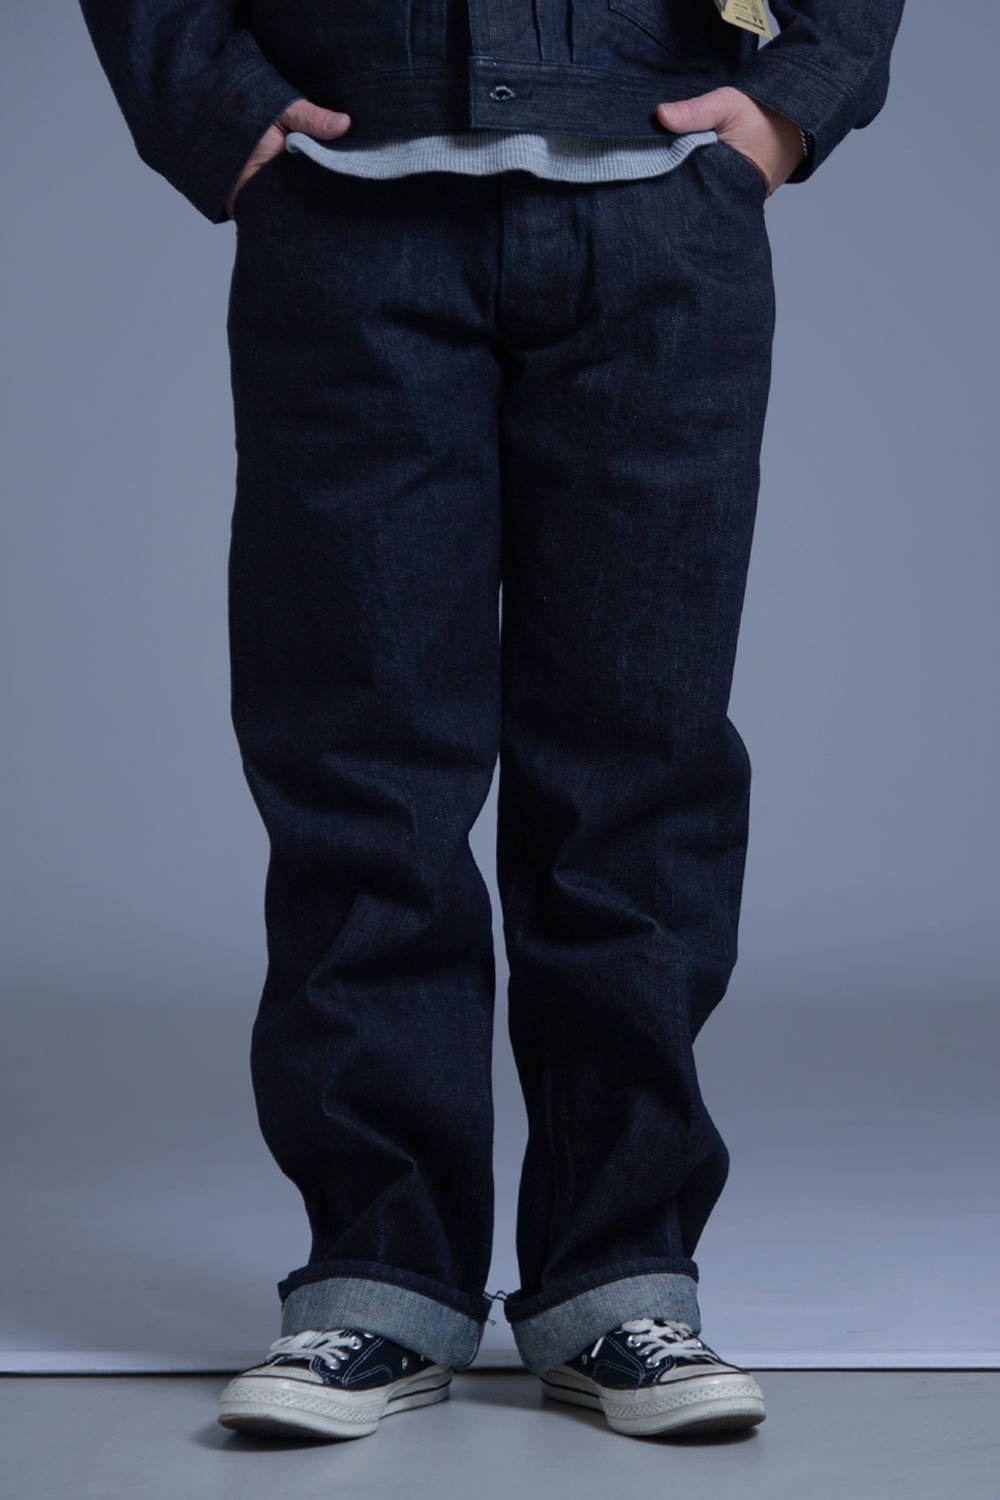 TROPHY CLOTHING(トロフィークロージング) デニムパンツ 1705 Standard